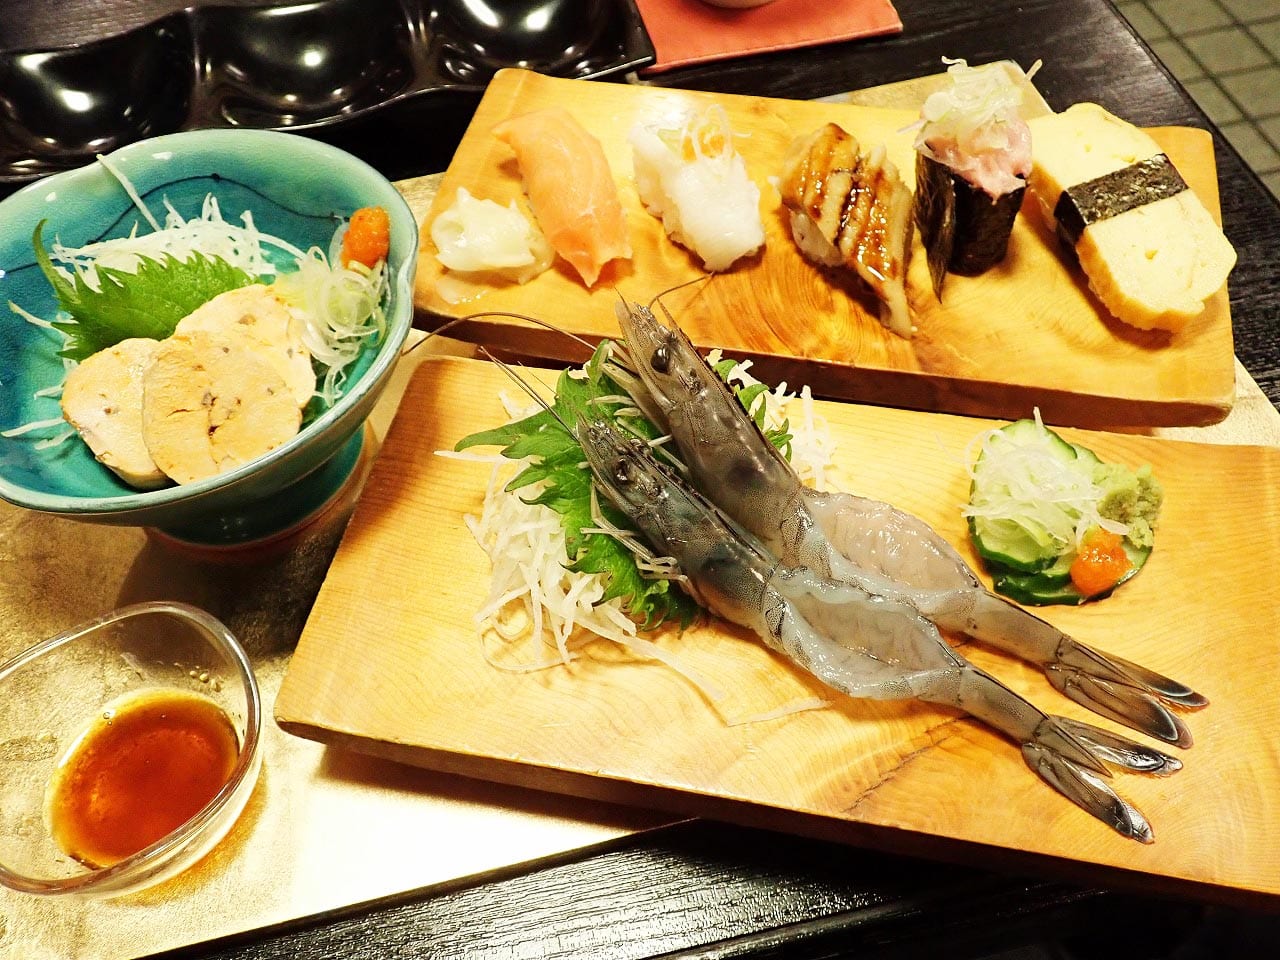 川越の美味しいお寿司屋さん『鮨処 結』